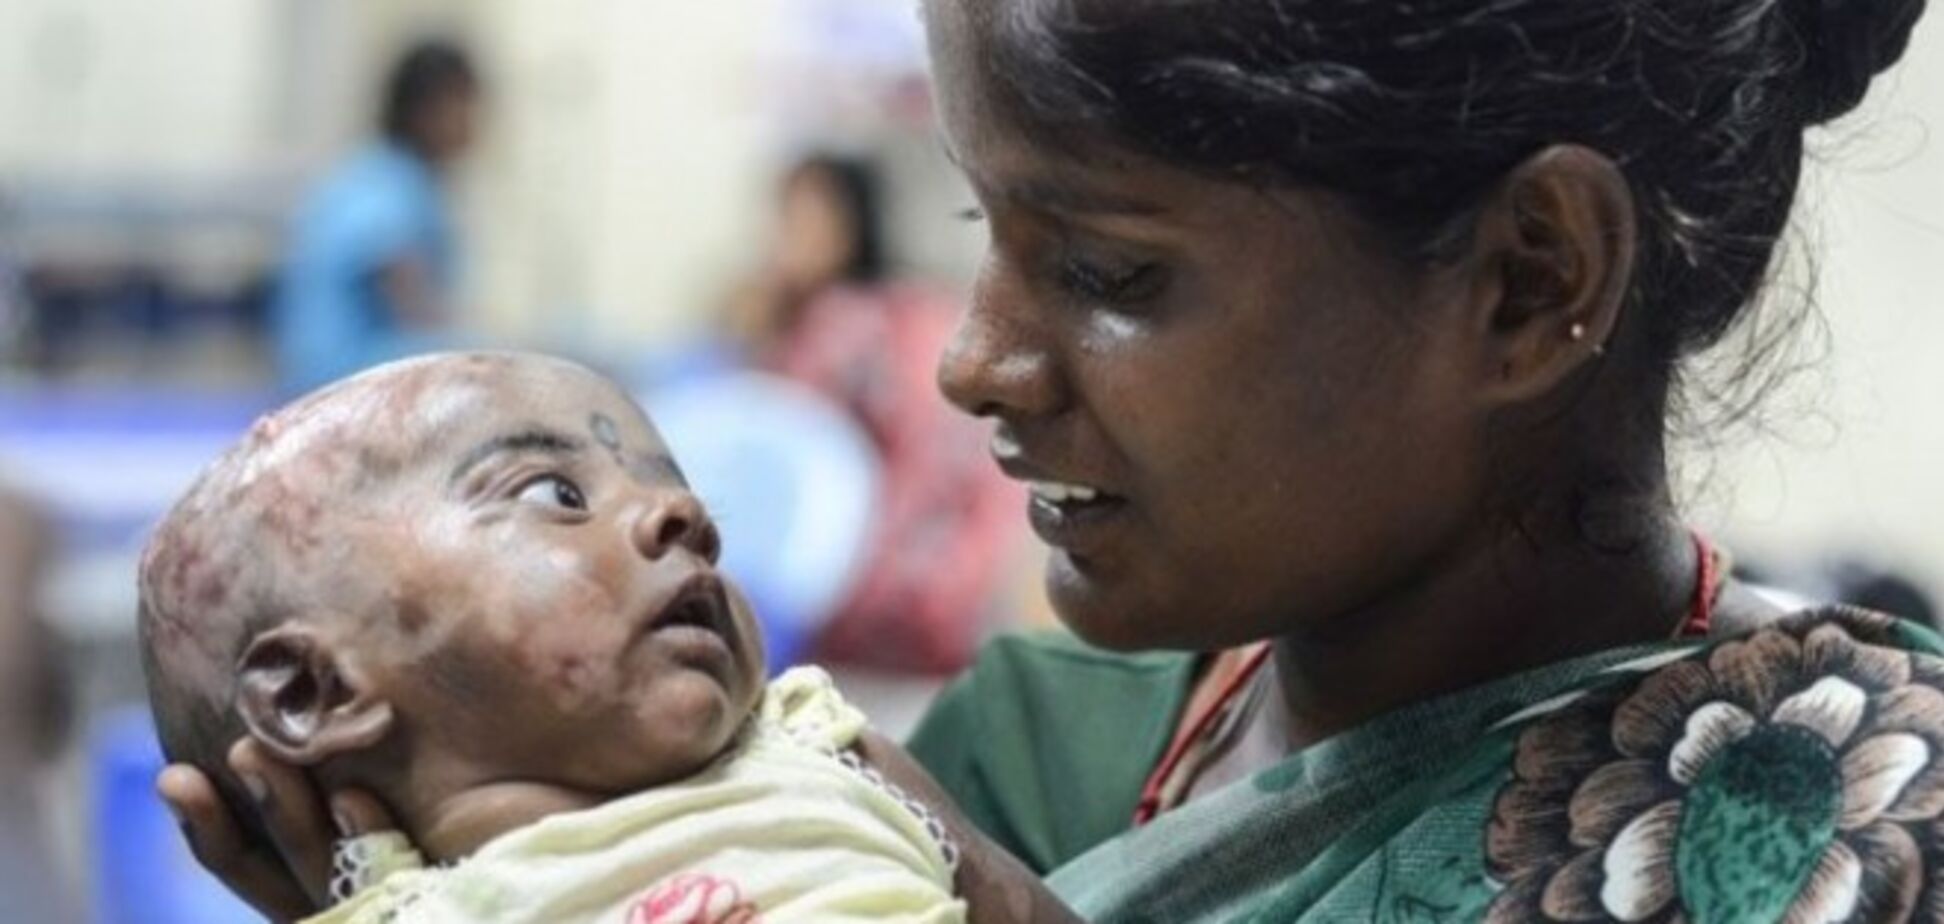 В Индии трехмесячный малыш страдает от самовоспламенения